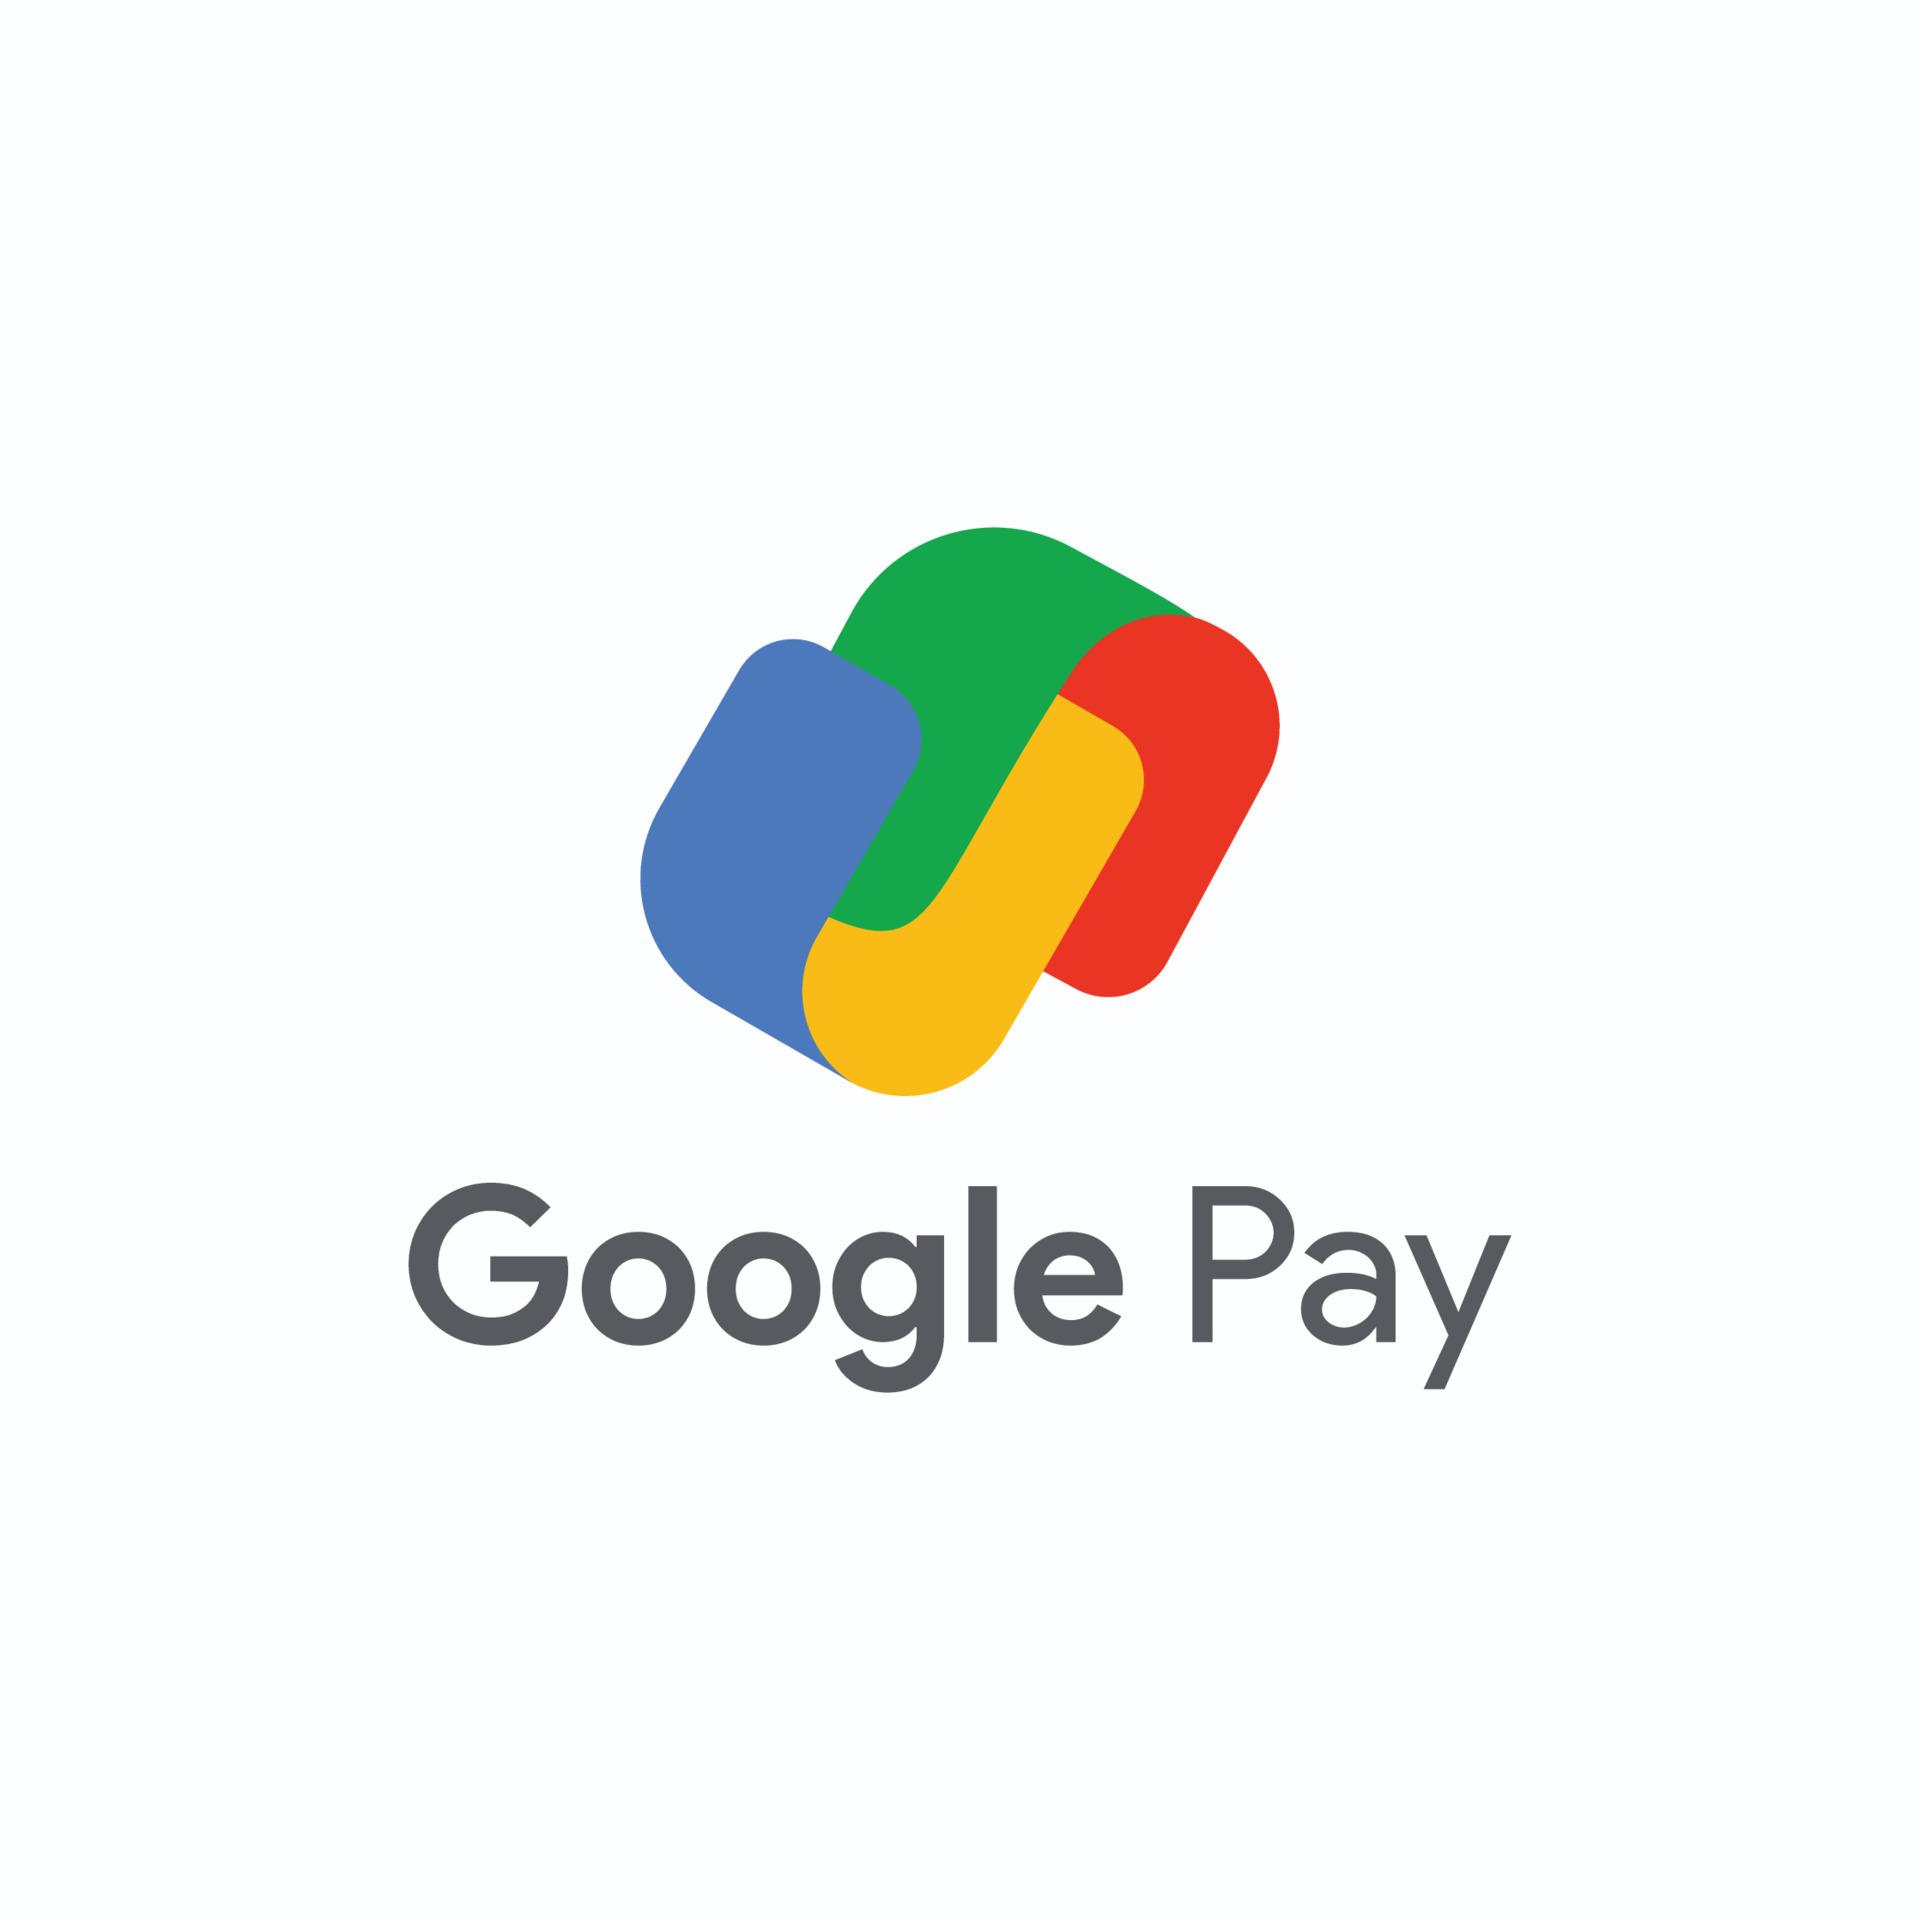 Google Pay Cashback offers